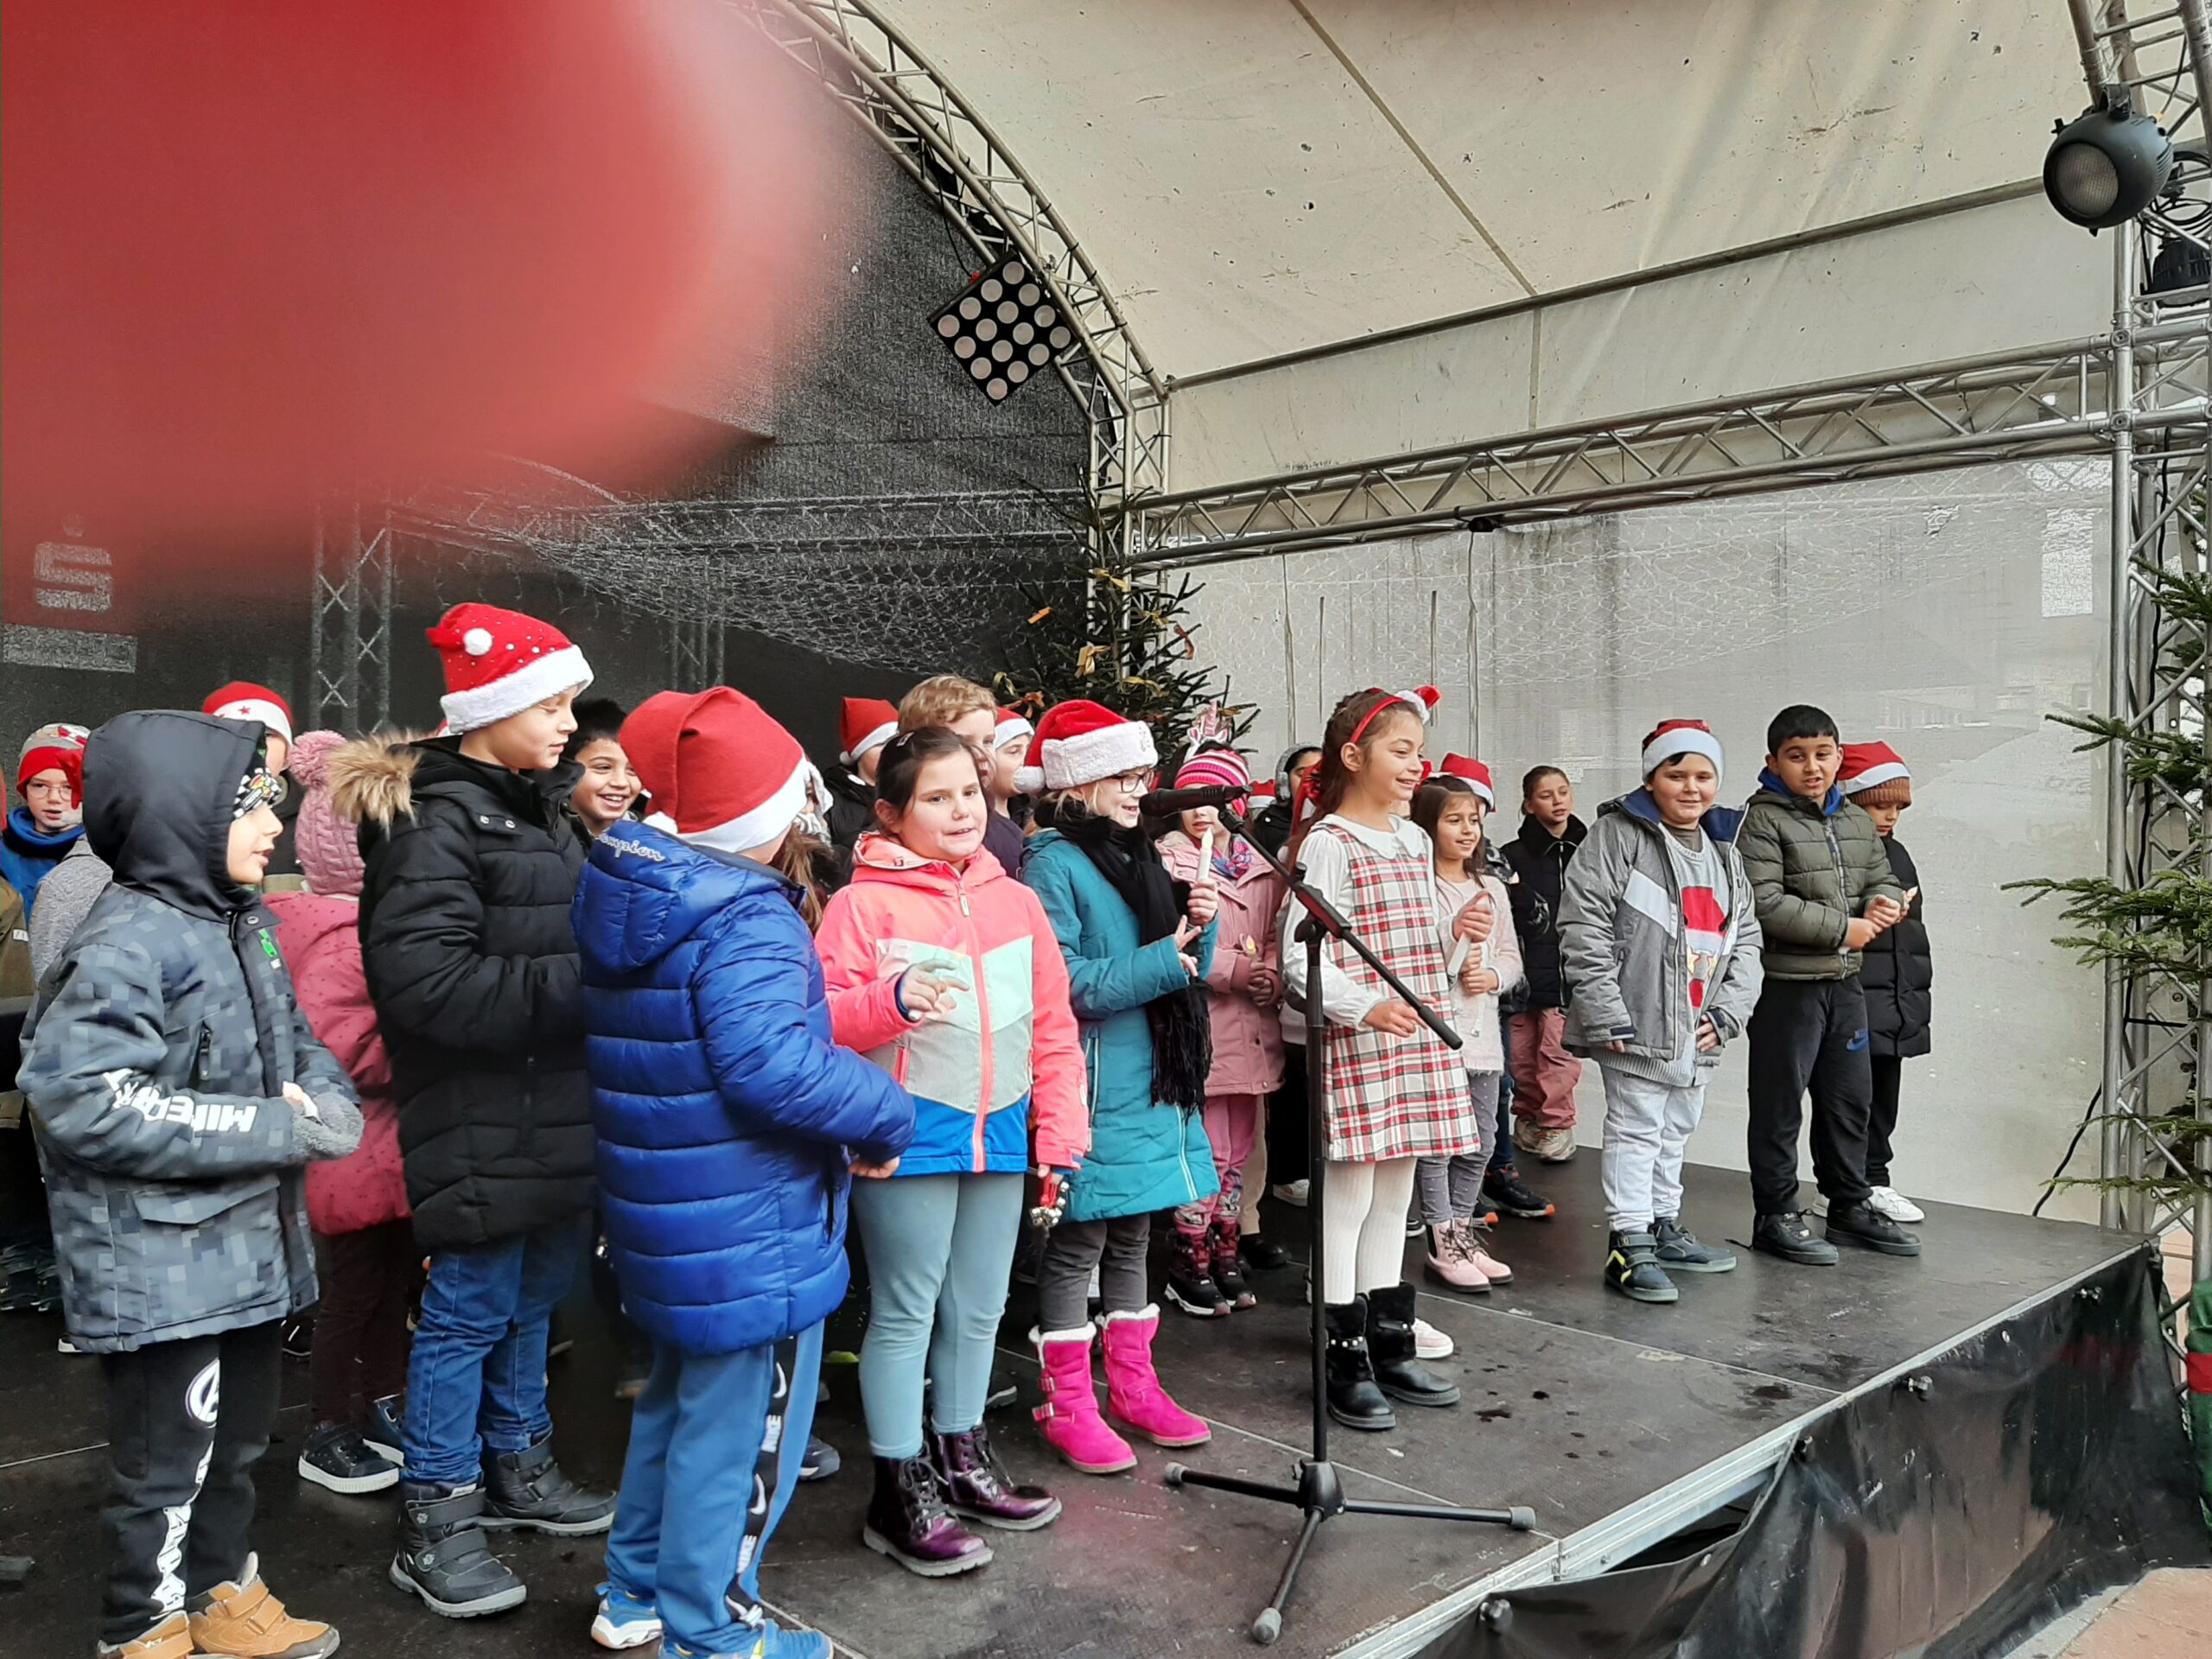 Schülerinnen und Schüler beim Auftritt auf der offenen Bühne auf dem Weihnachtsmarkt in Pforzheim